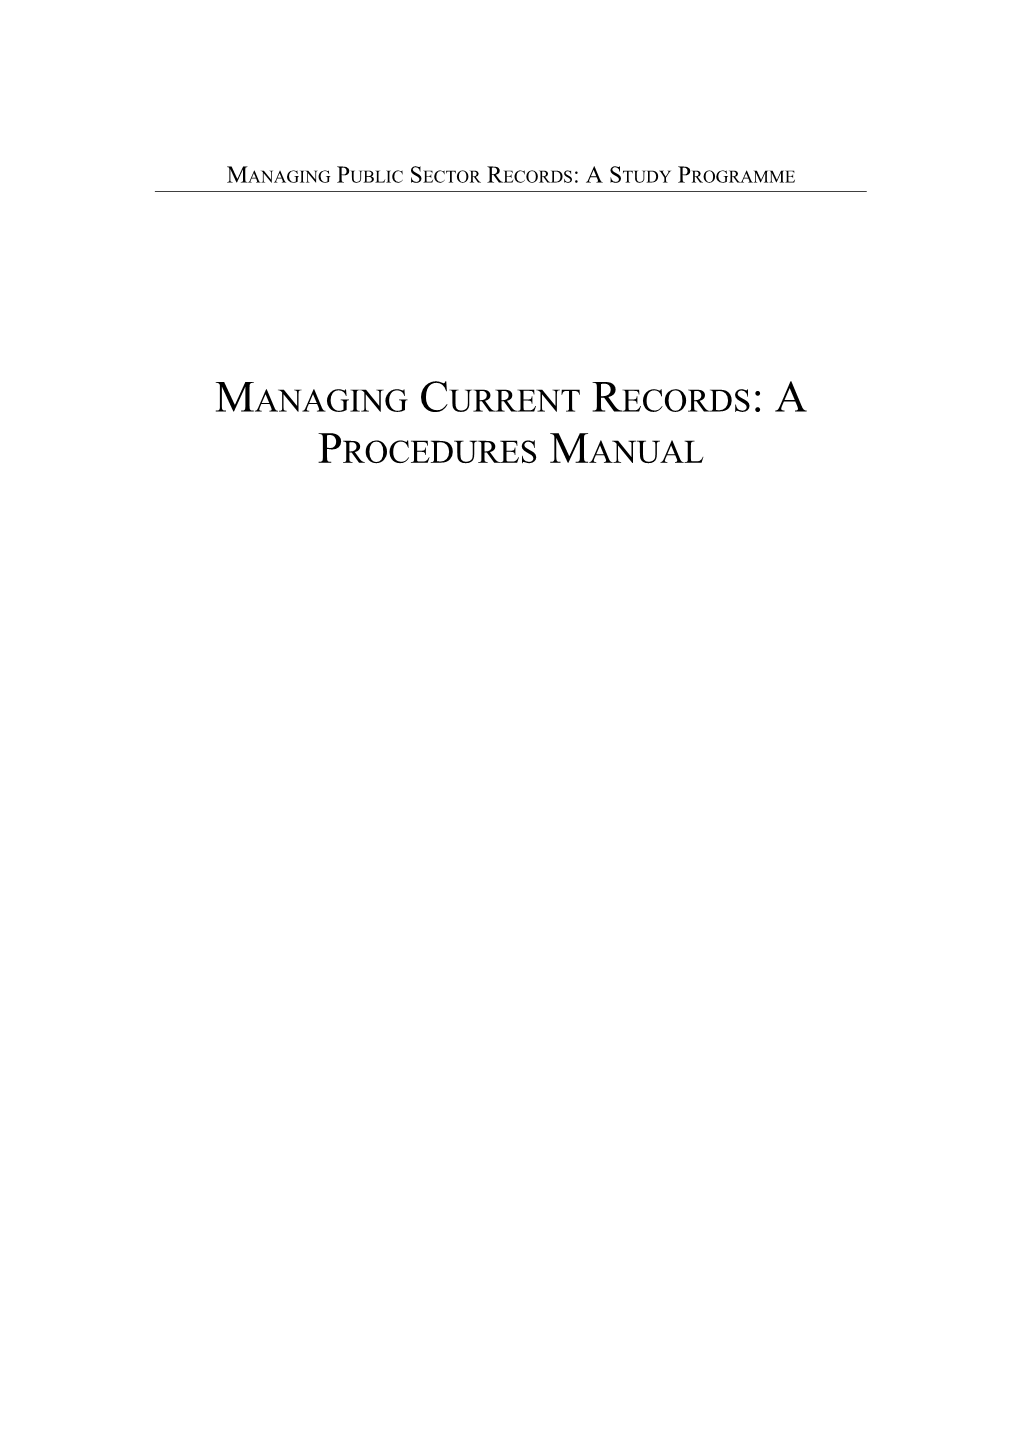 Managing Current Records: a Procedures Manual